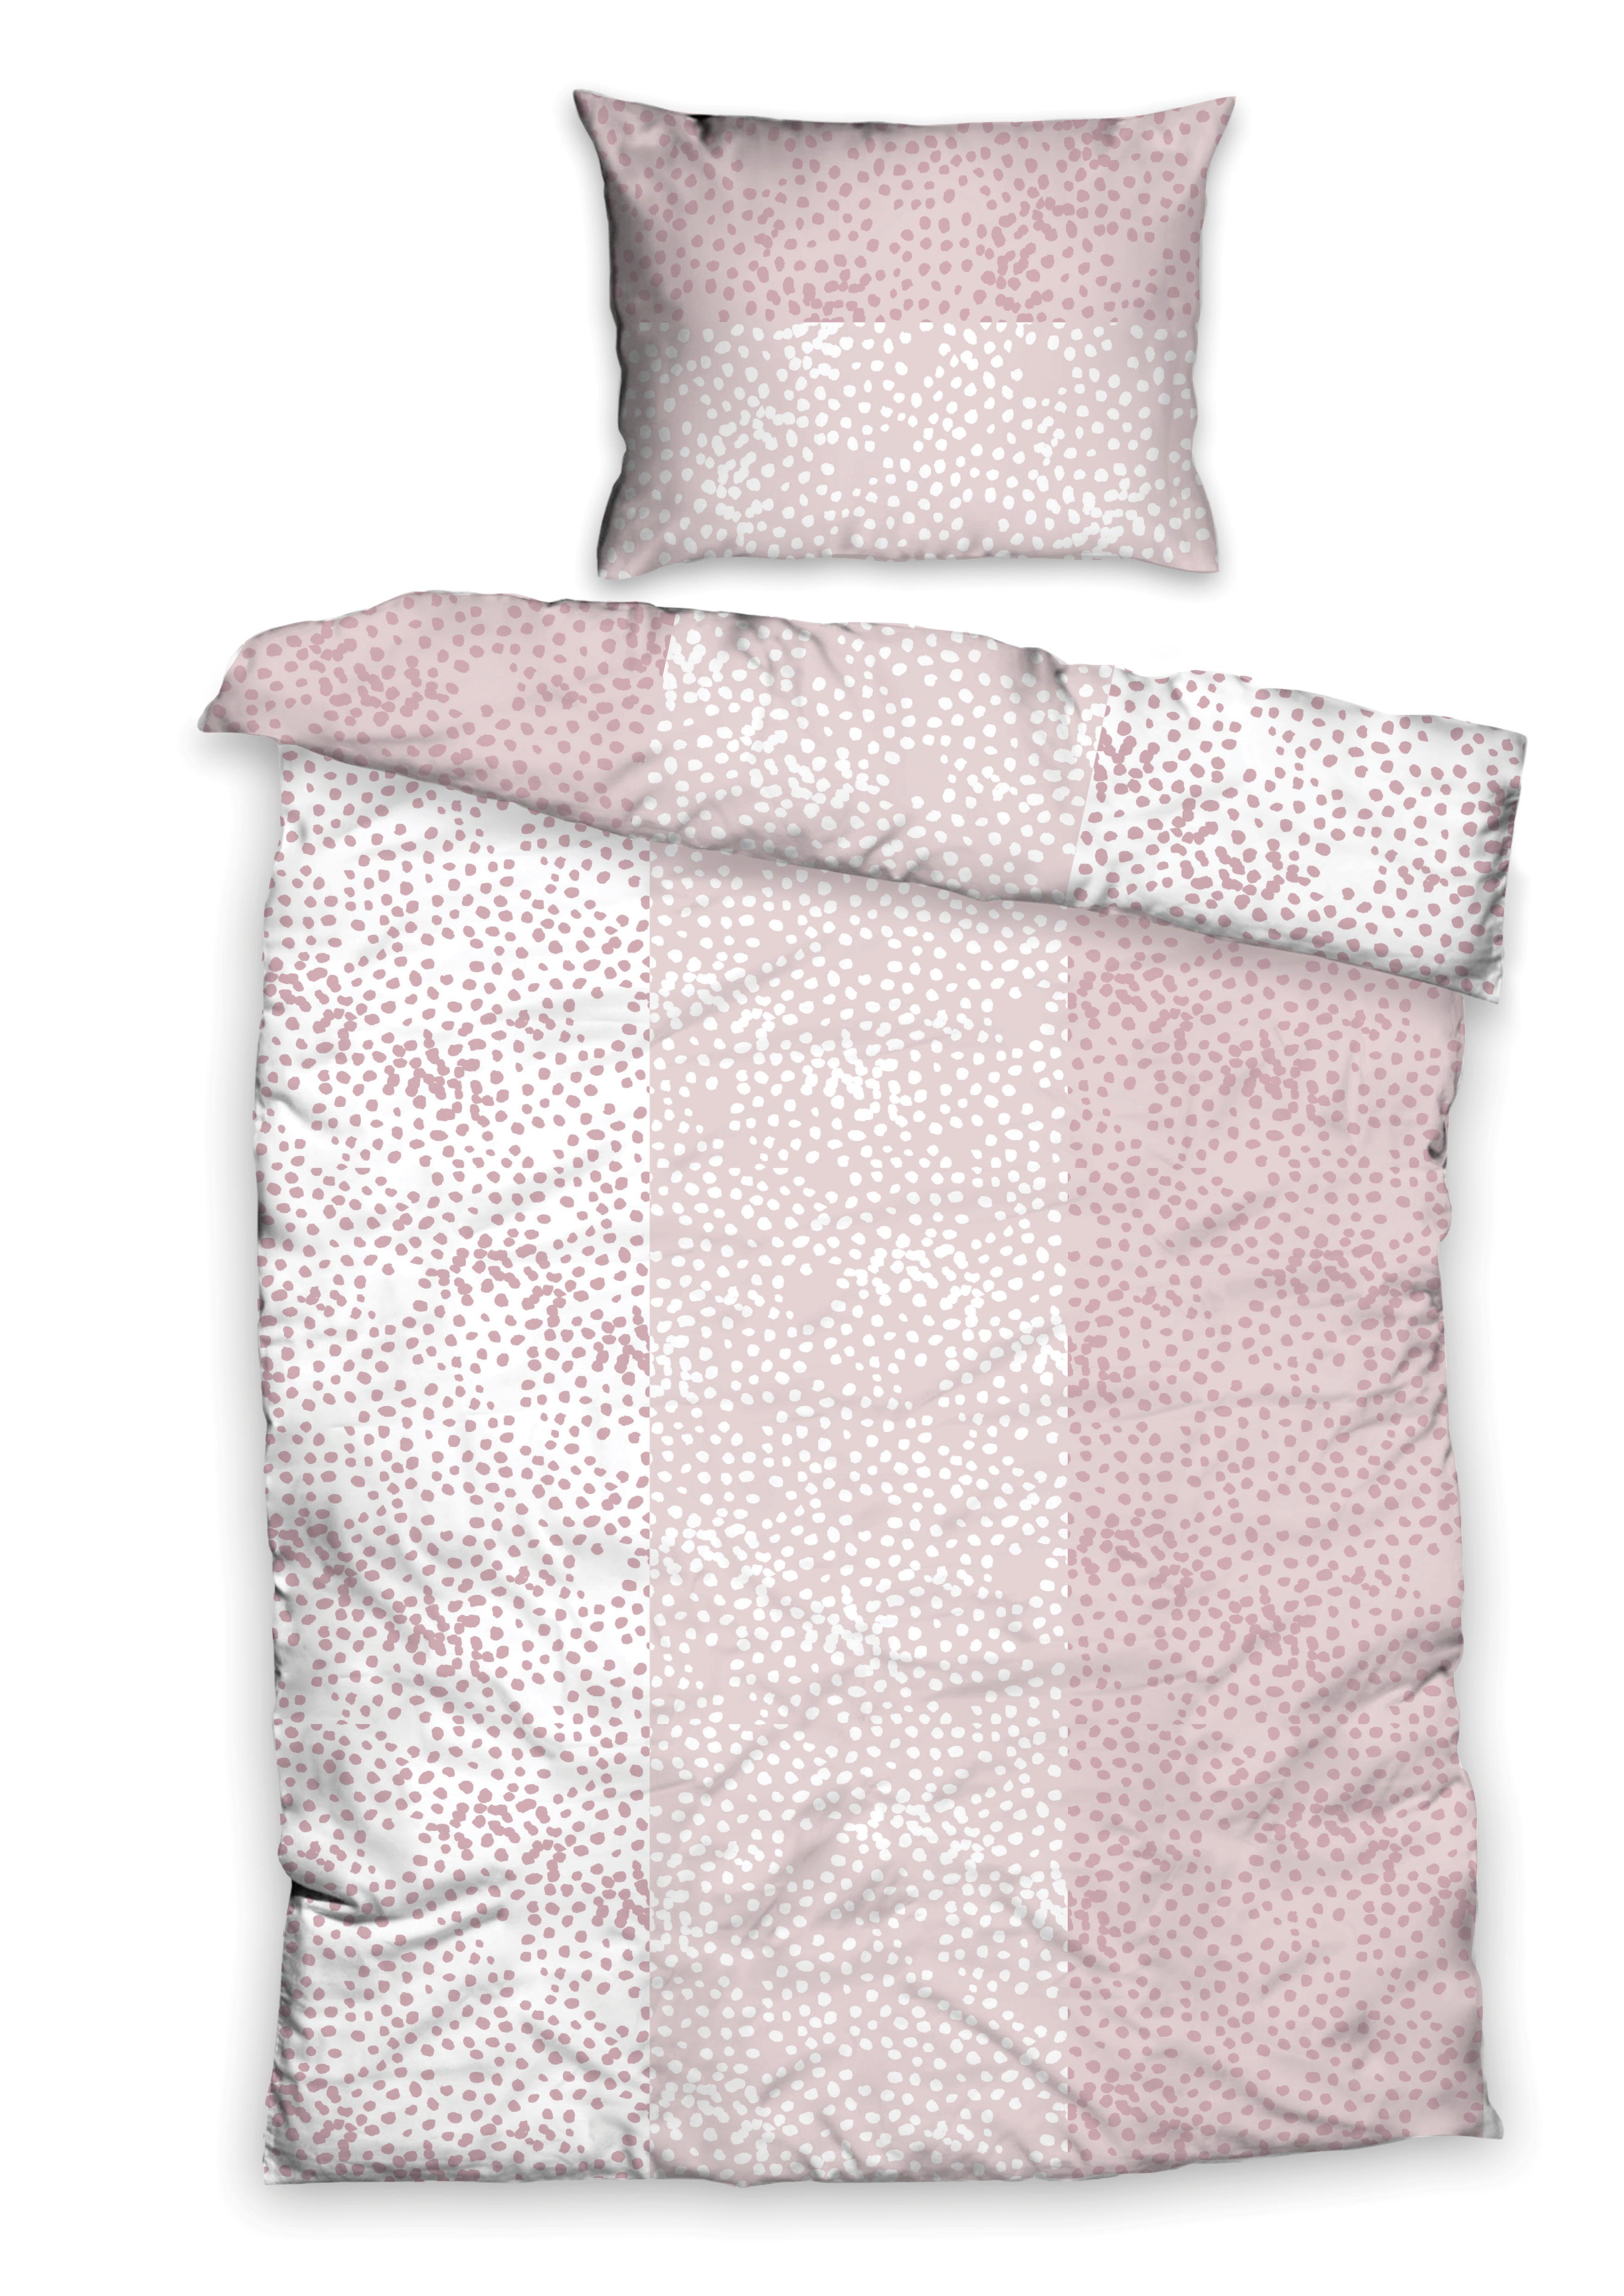 Posteľná Bielizeň Greta, 140/200cm, Ružová - biela/ružová, Basics, textil (140/200cm)